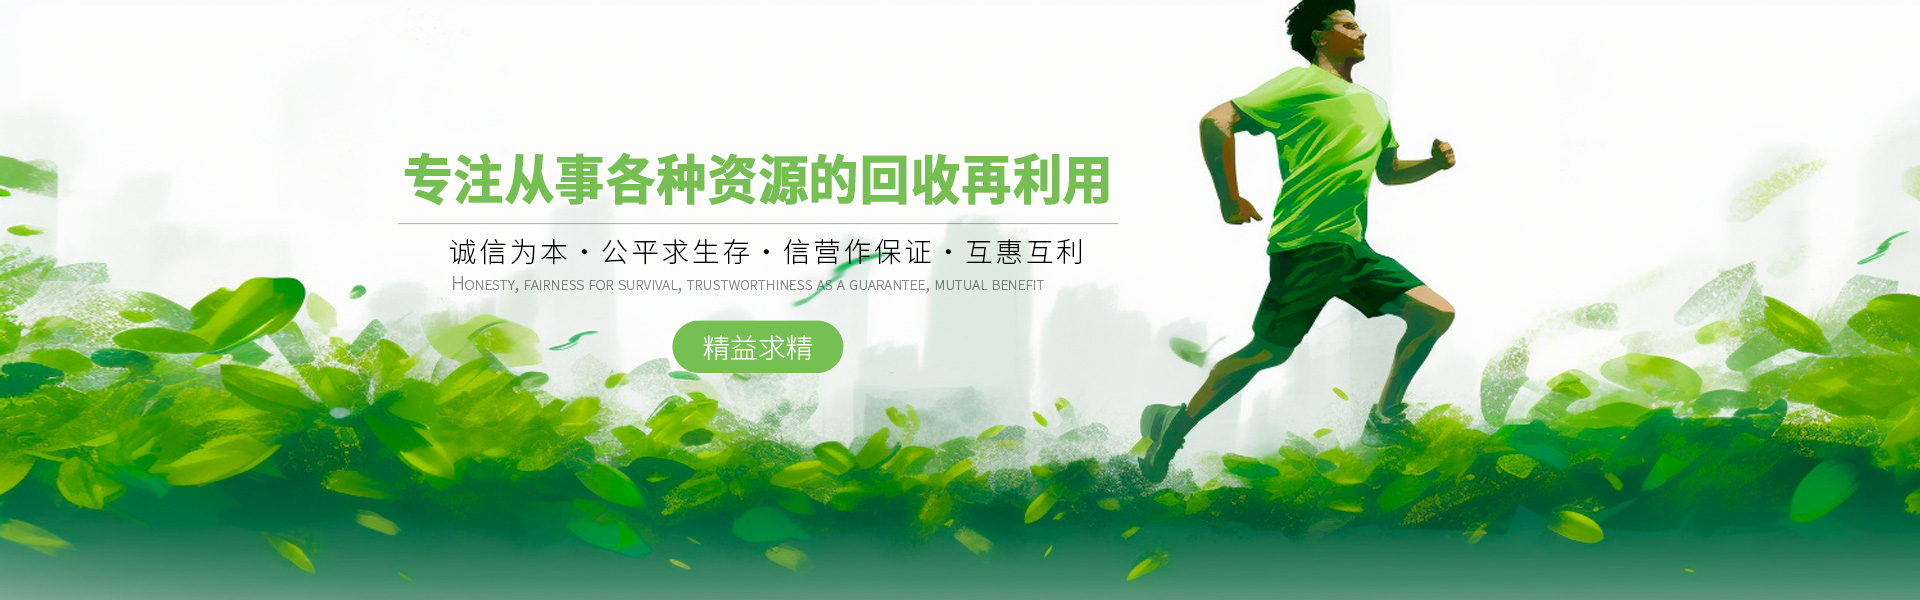 上海闳博再生资源回收有限公司